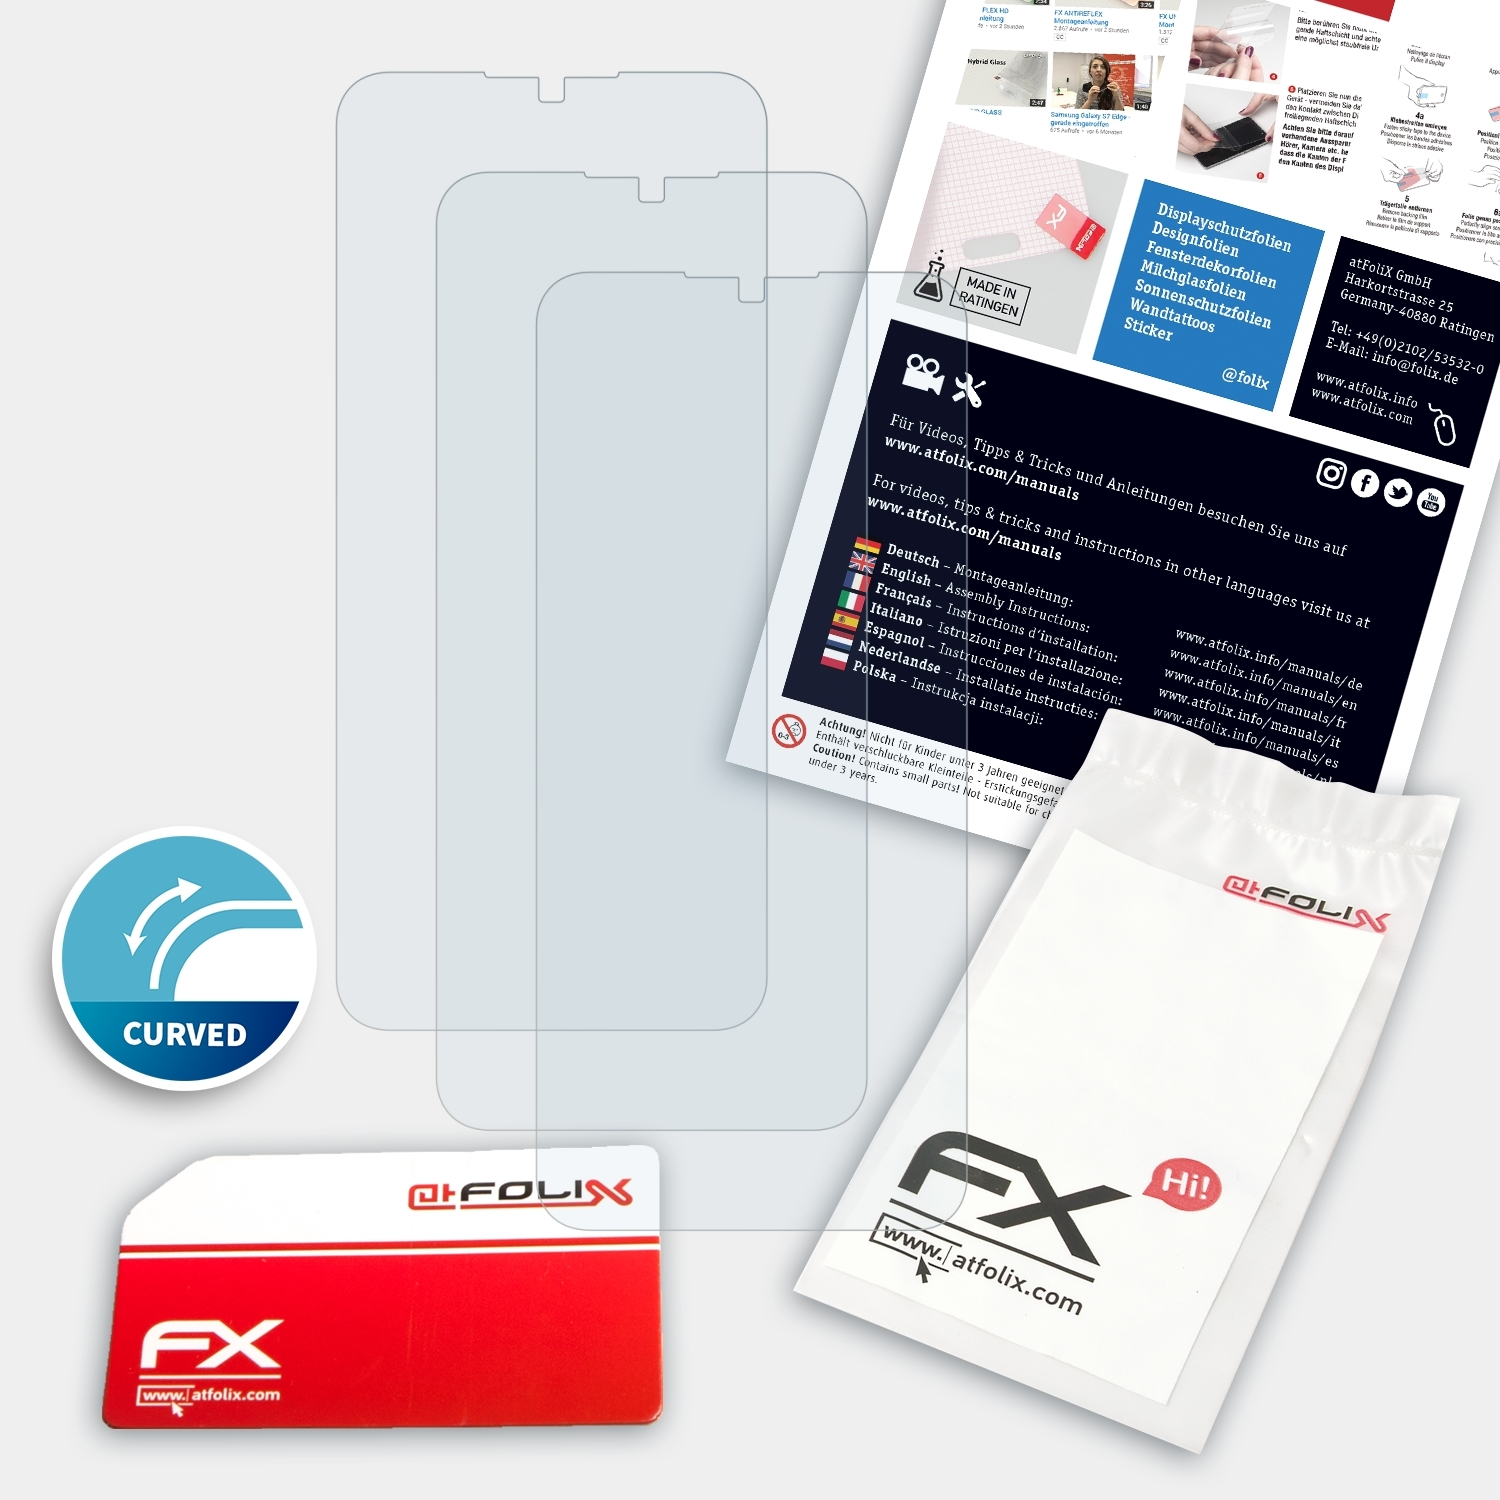 Oppo ATFOLIX FX-ActiFleX Displayschutz(für 5) Realme 3x